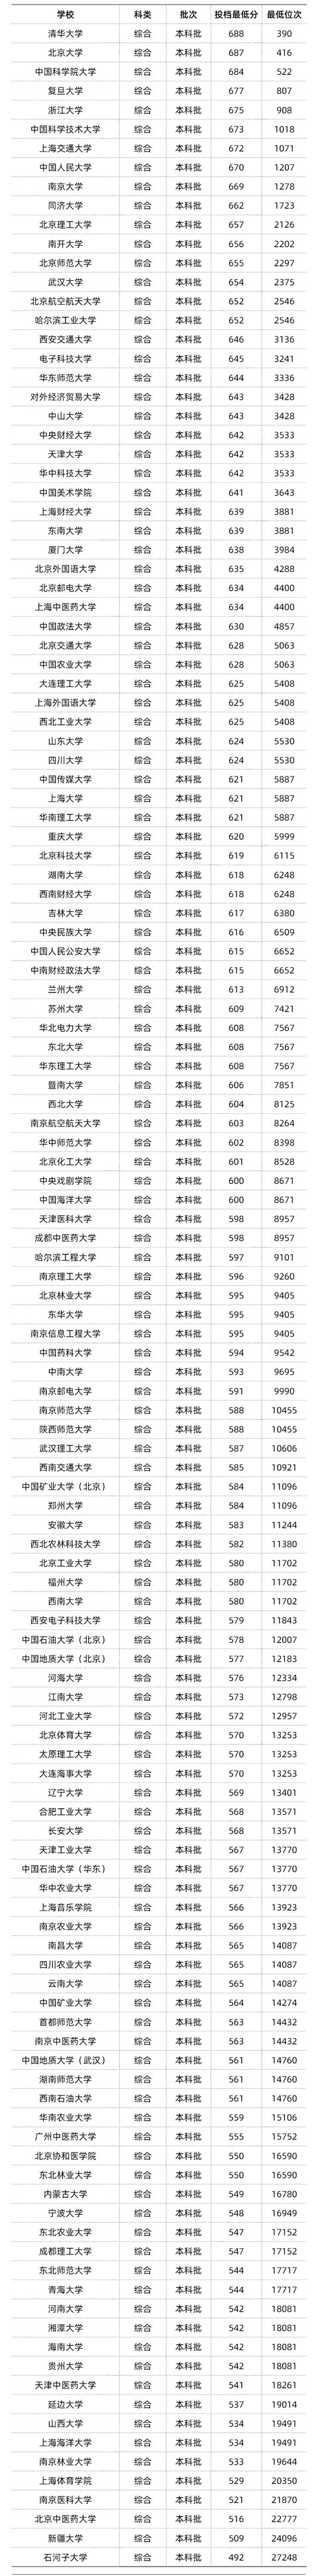 中国双一流建设高校/985/211高校分布图